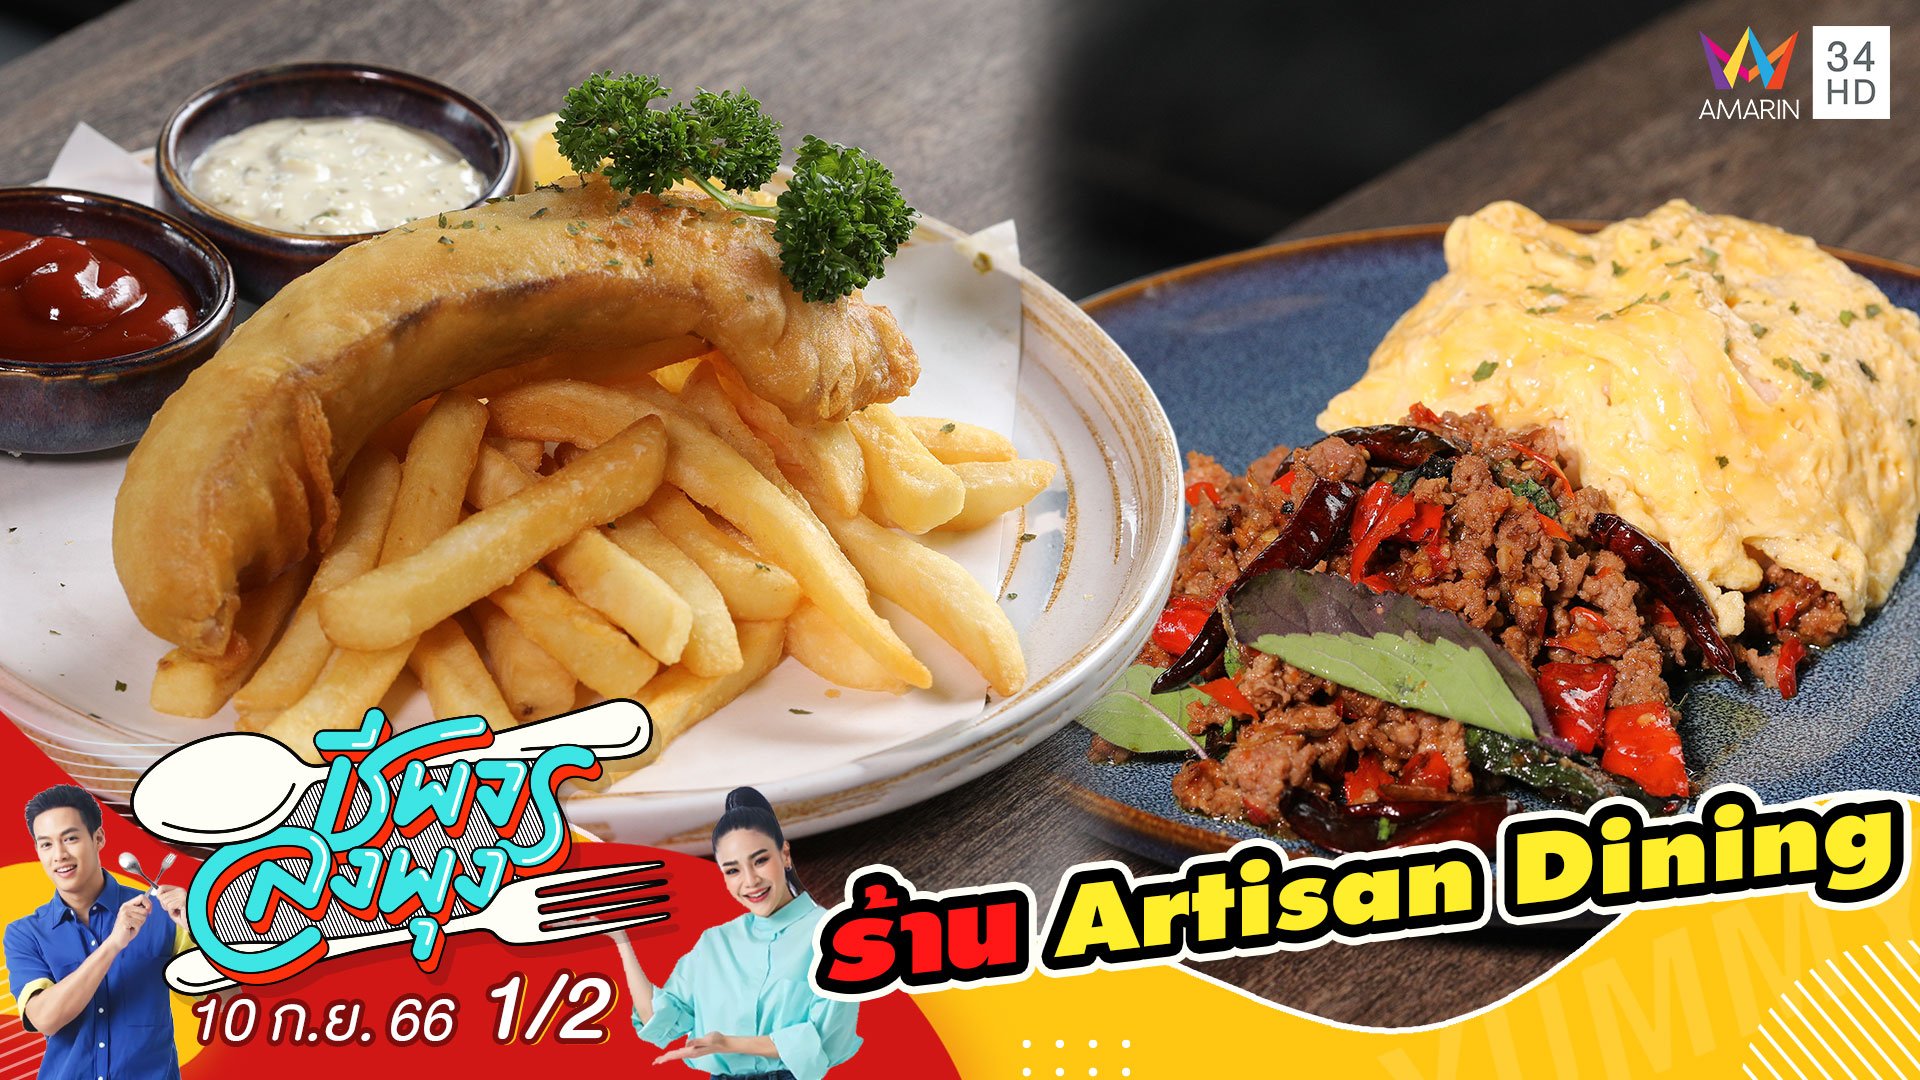 ร้าน Artisan Dining | ชีพจรลงพุง | 10 ก.ย. 66 (1/2) | AMARIN TVHD34